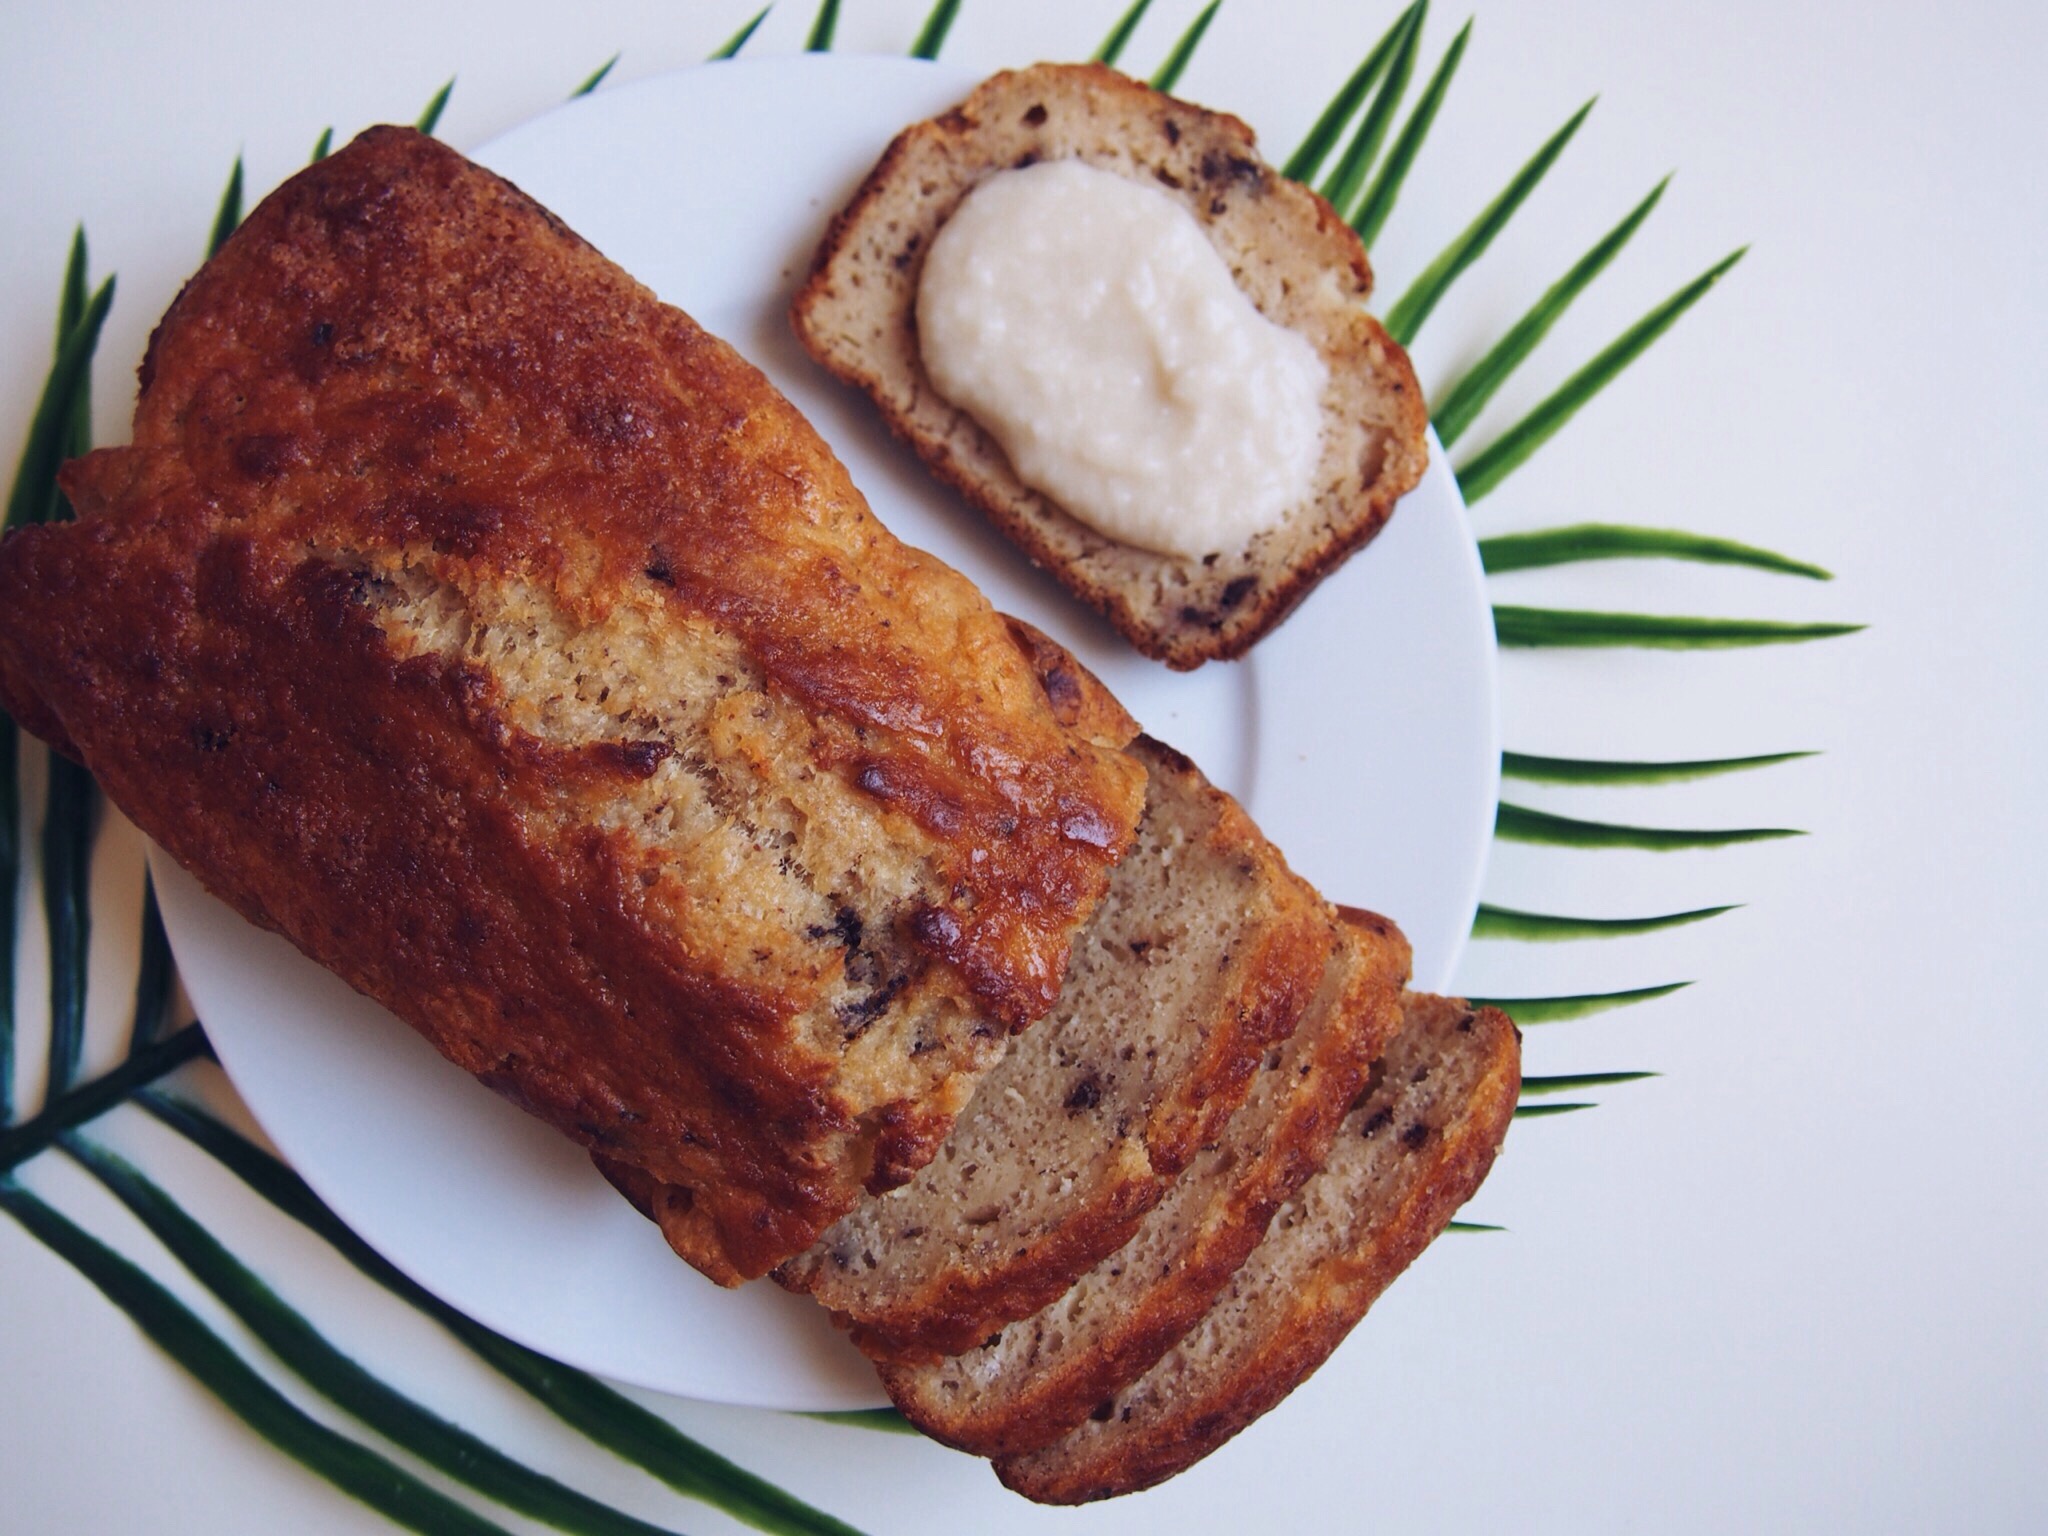 brunch_Green_healthy_muffins_banana bread_smoothie_glutenfree_sans gluten